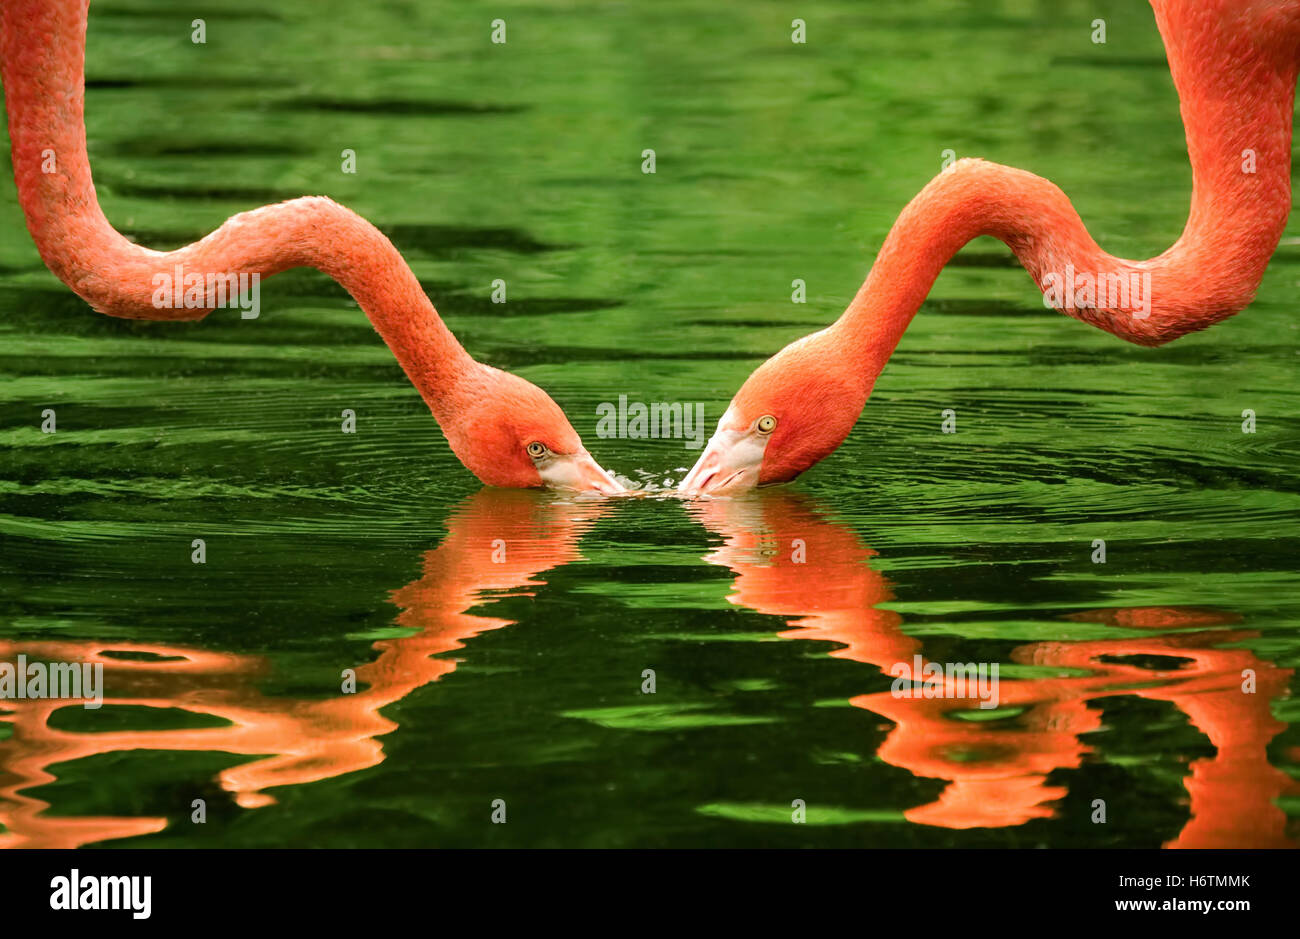 symmetrical mirrored flamingo necks Stock Photo